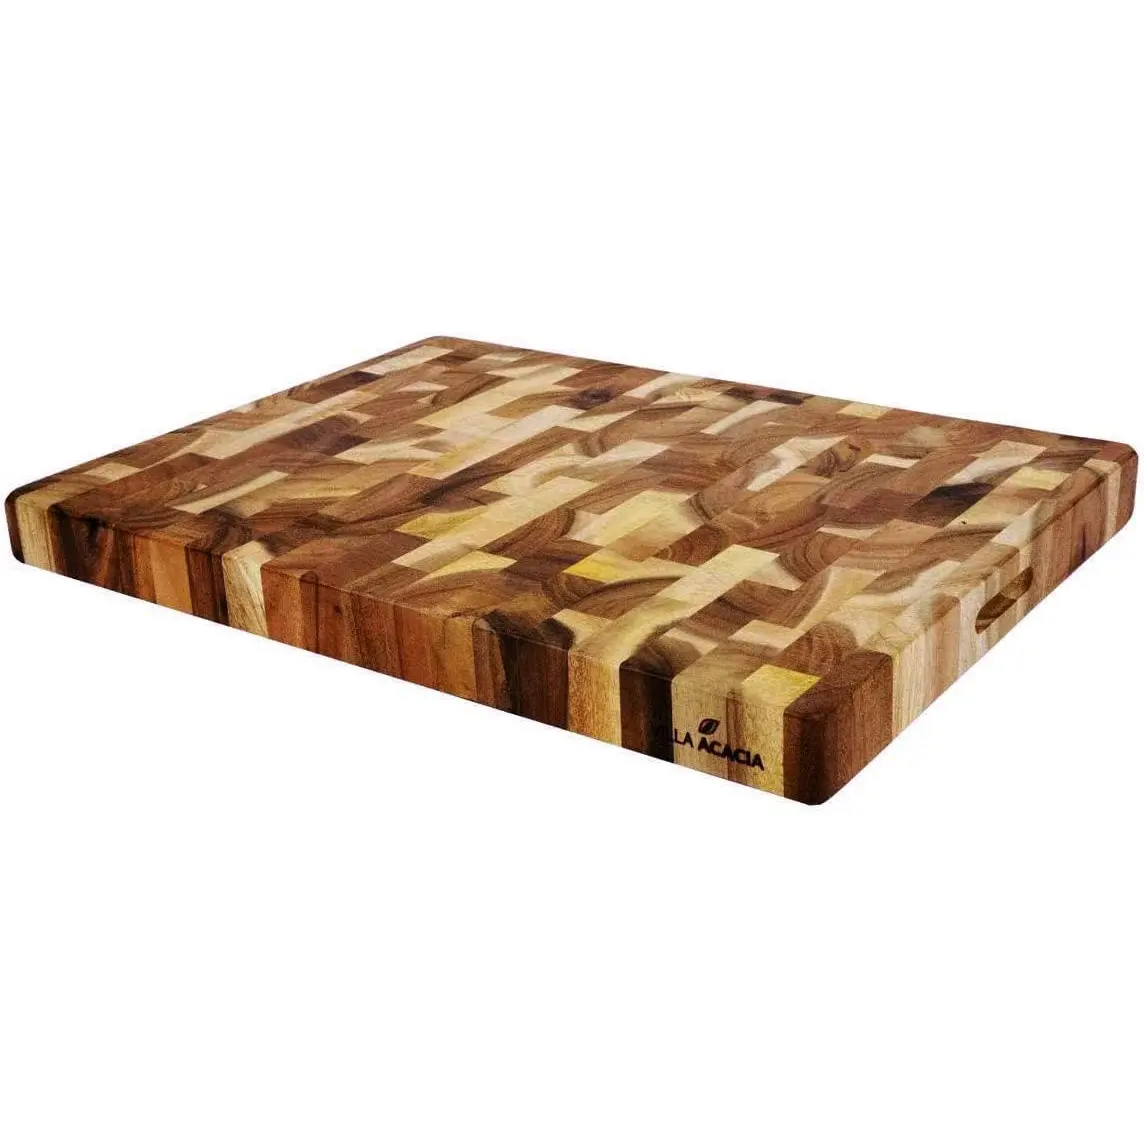 Bloque de carnicero de gran tamaño de Acacia, tabla de cortar de madera grande de 60,96x45,72x5,08 cm de espesor, tabla de cortar de madera de Acacia